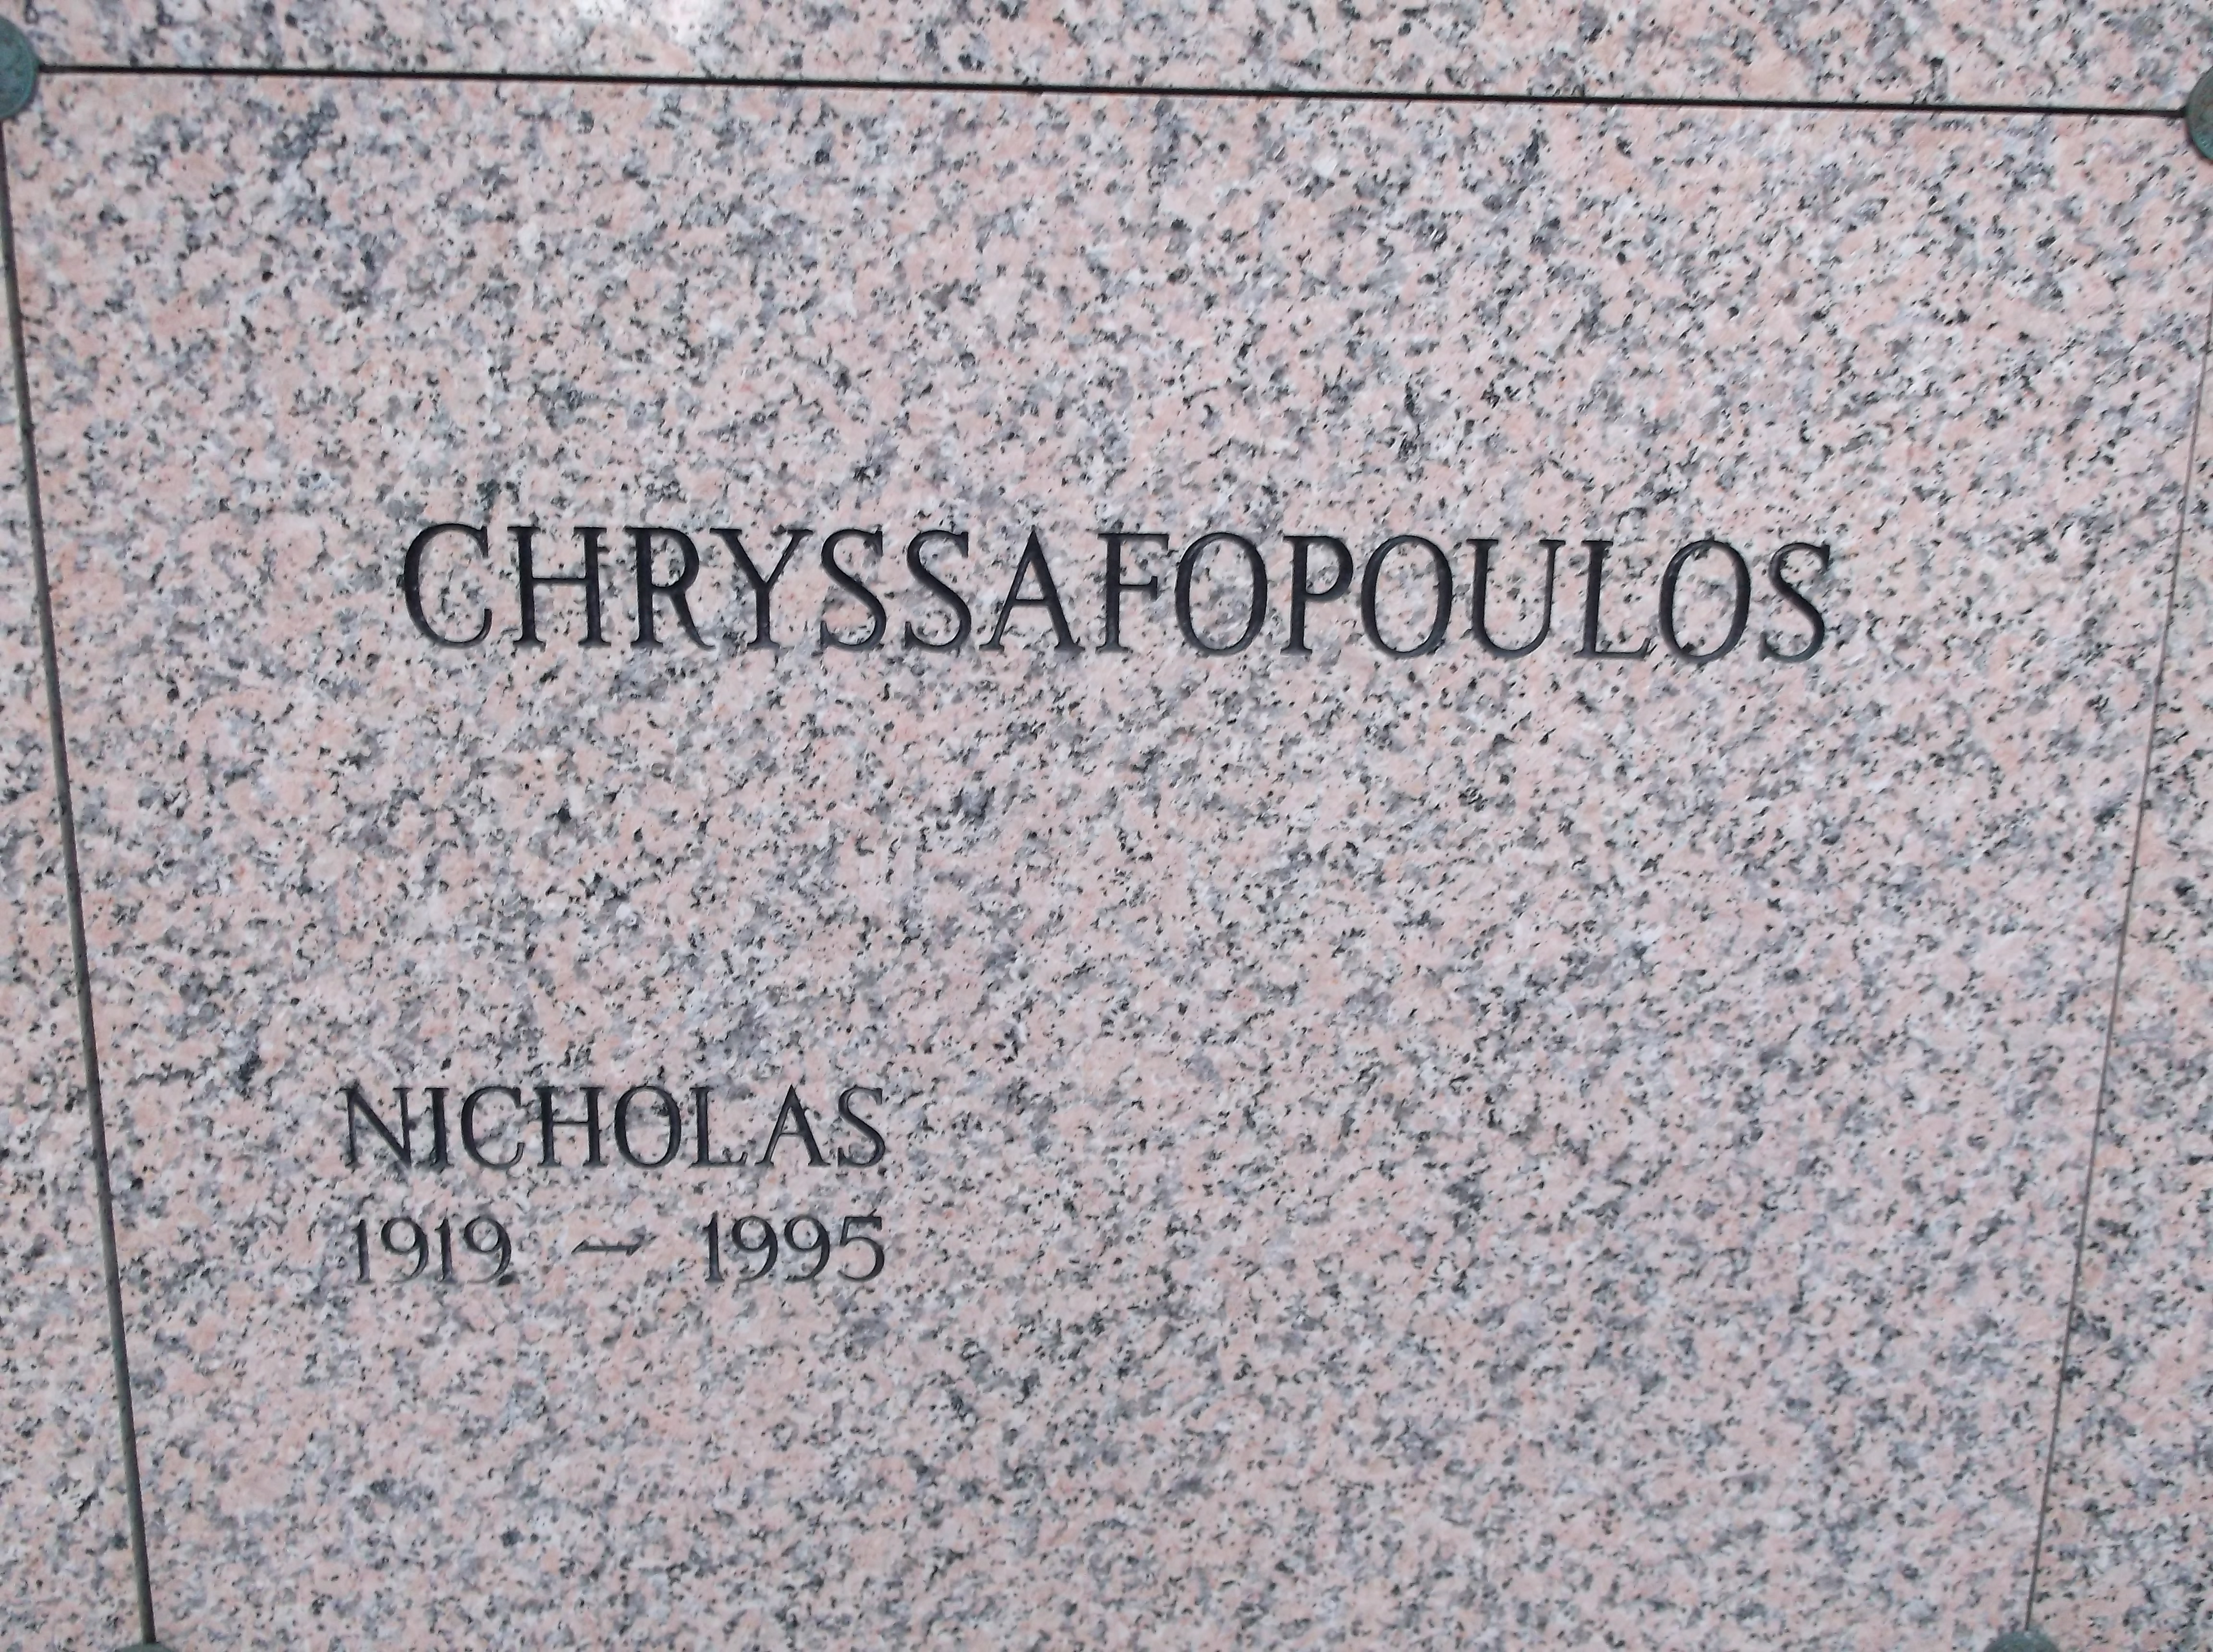 Nicholas Chryssafopoulos